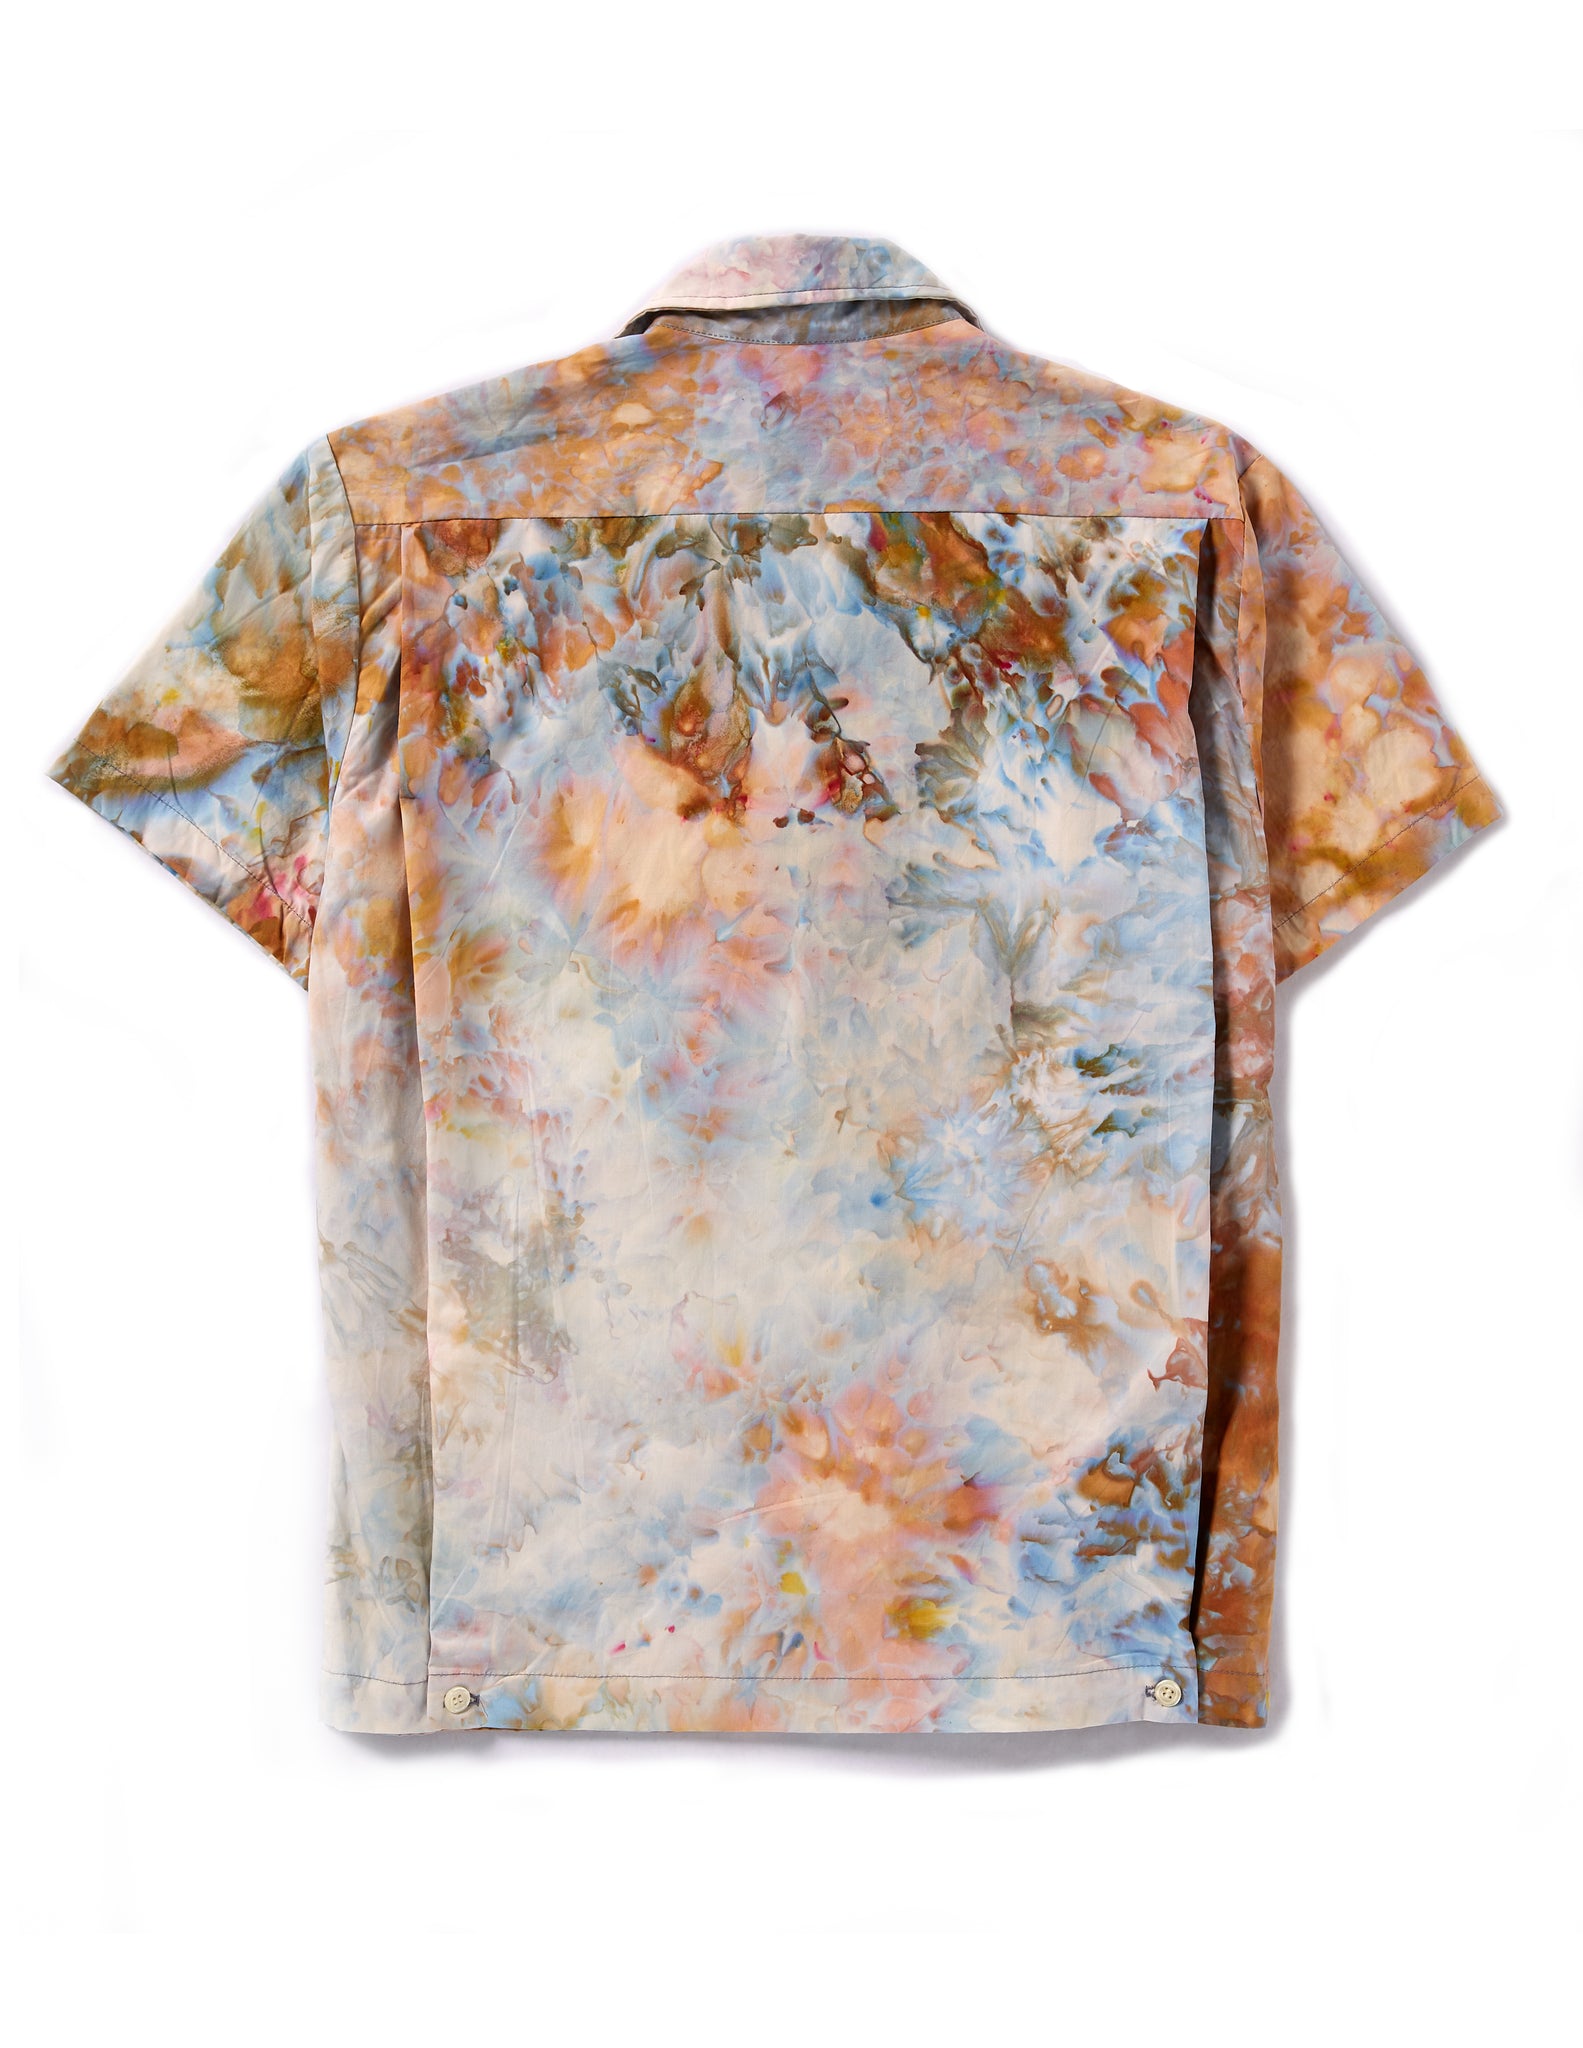 Louie Shirt in Ivory - riverside tool & dye